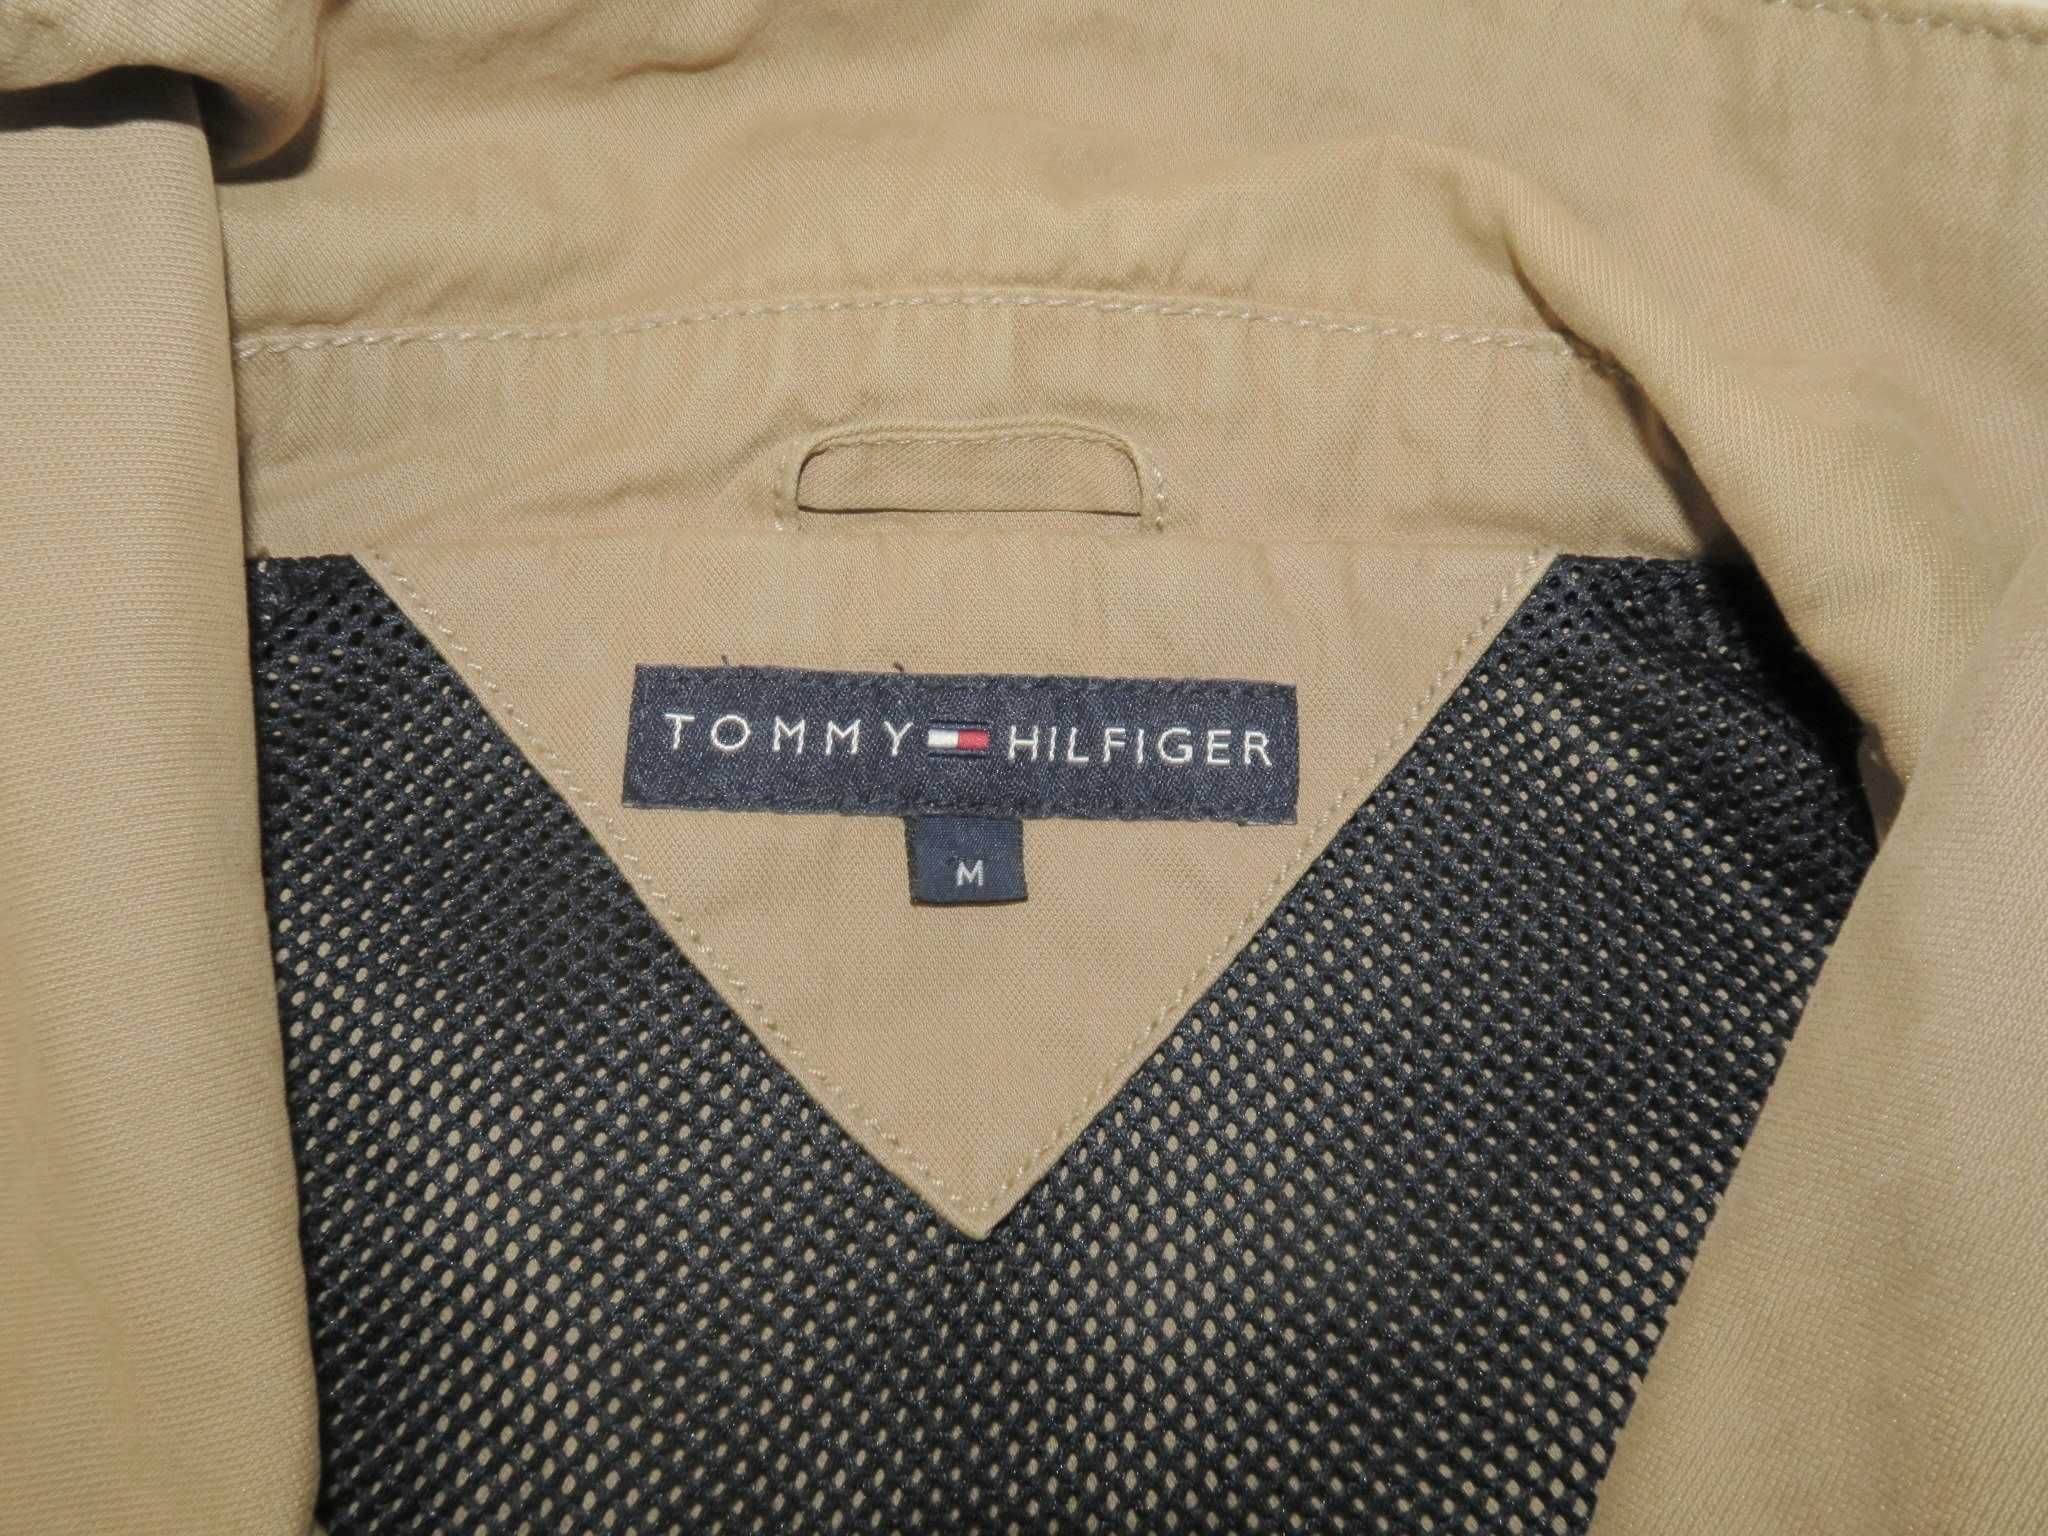 Tommy Hilfiger kurtka przejściowa M